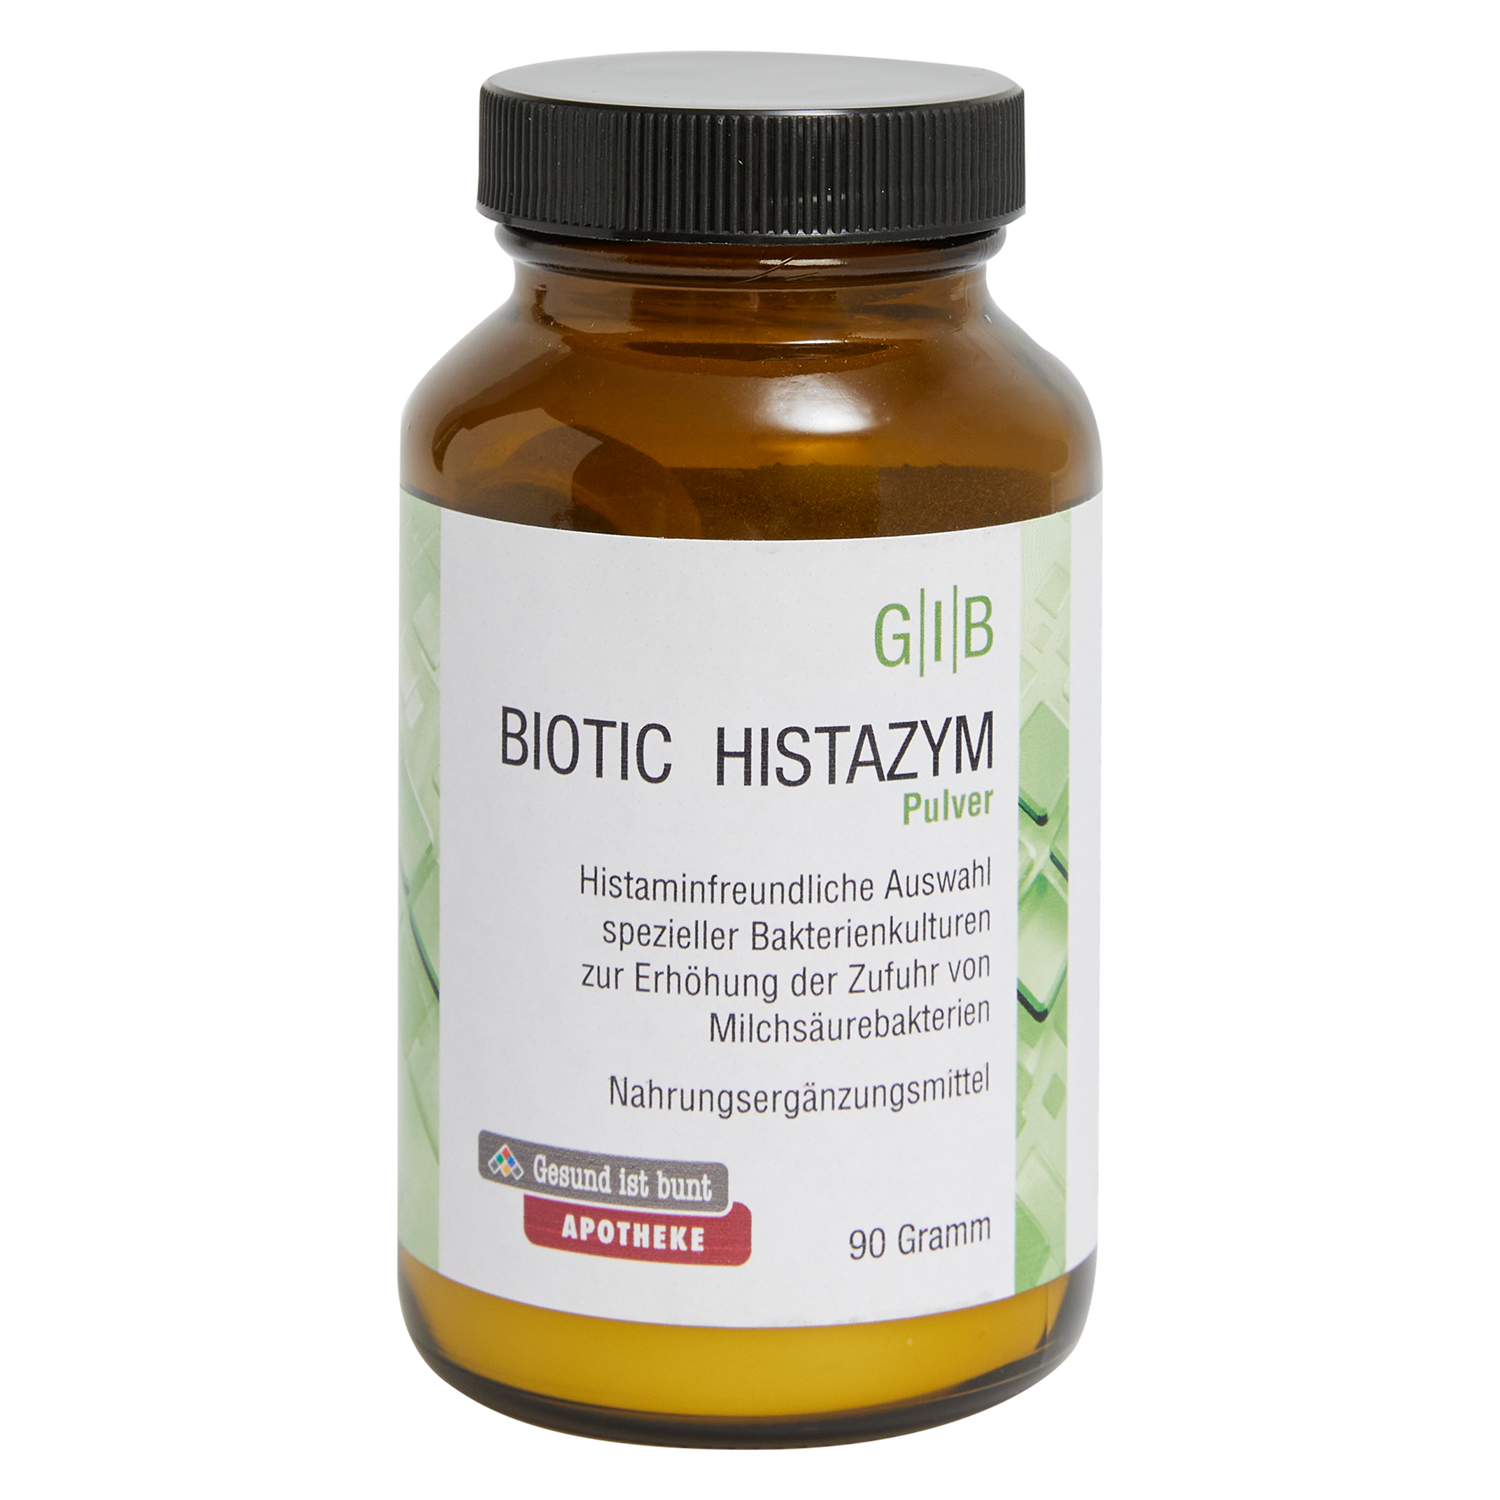 G|I|B Biotic Histazym 